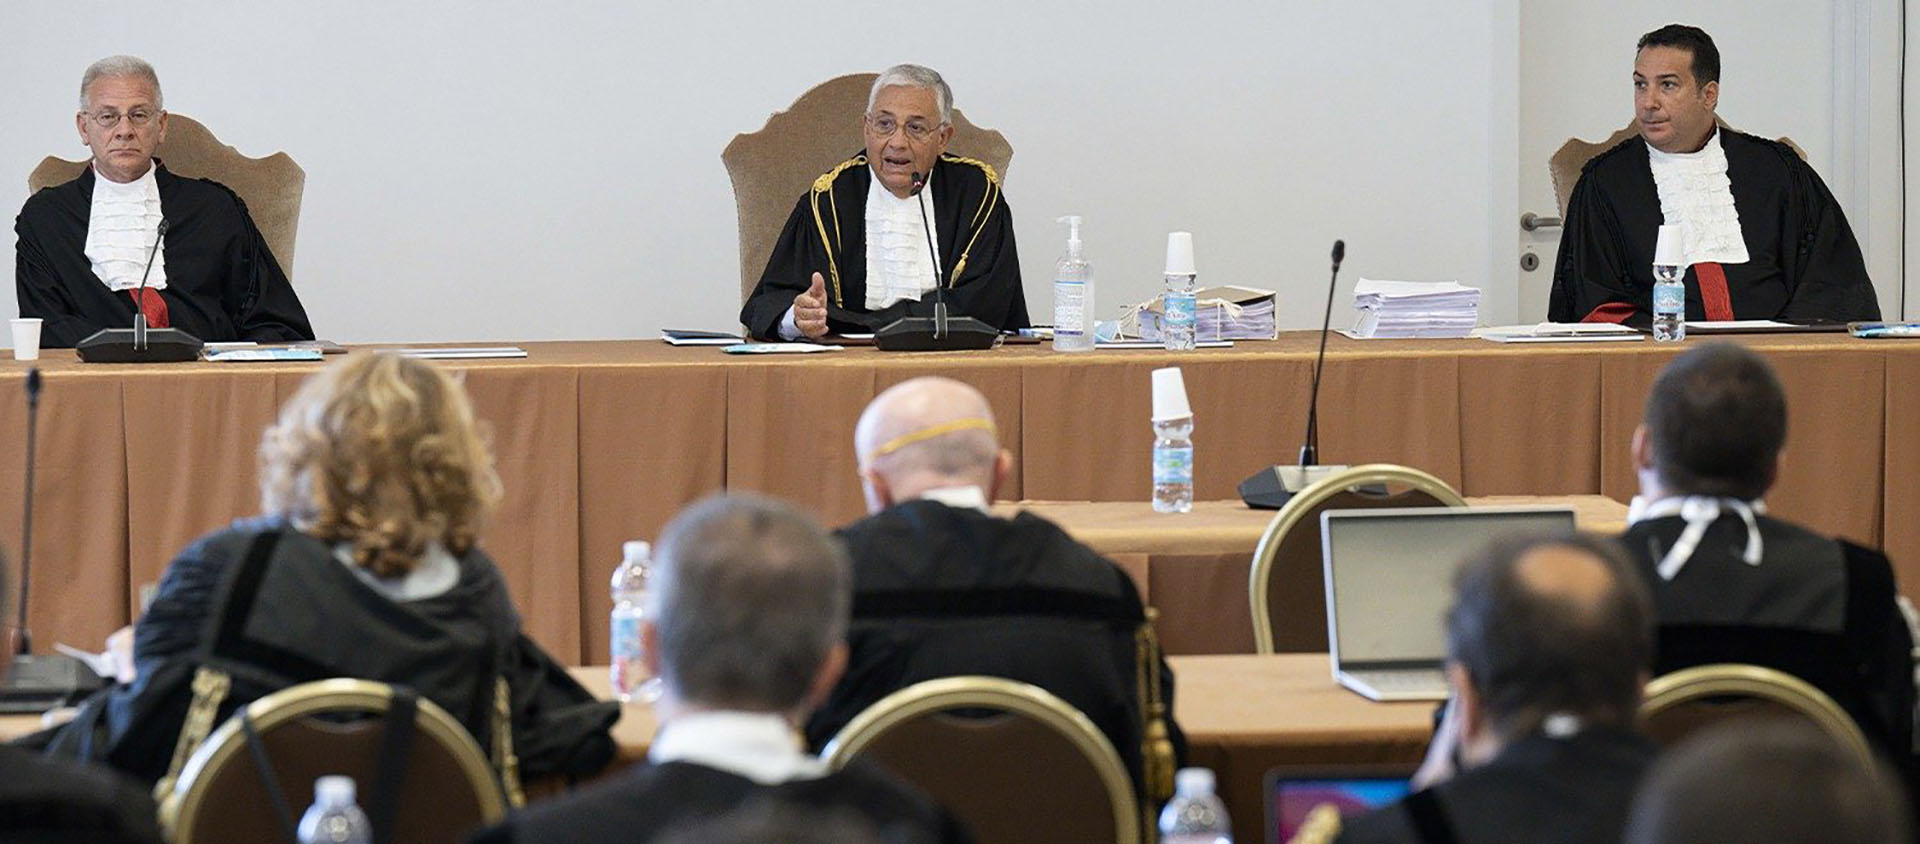 Le procès reprend après une pause de deux mois. Le juge va entendre 200 témoins | © Vatican Media